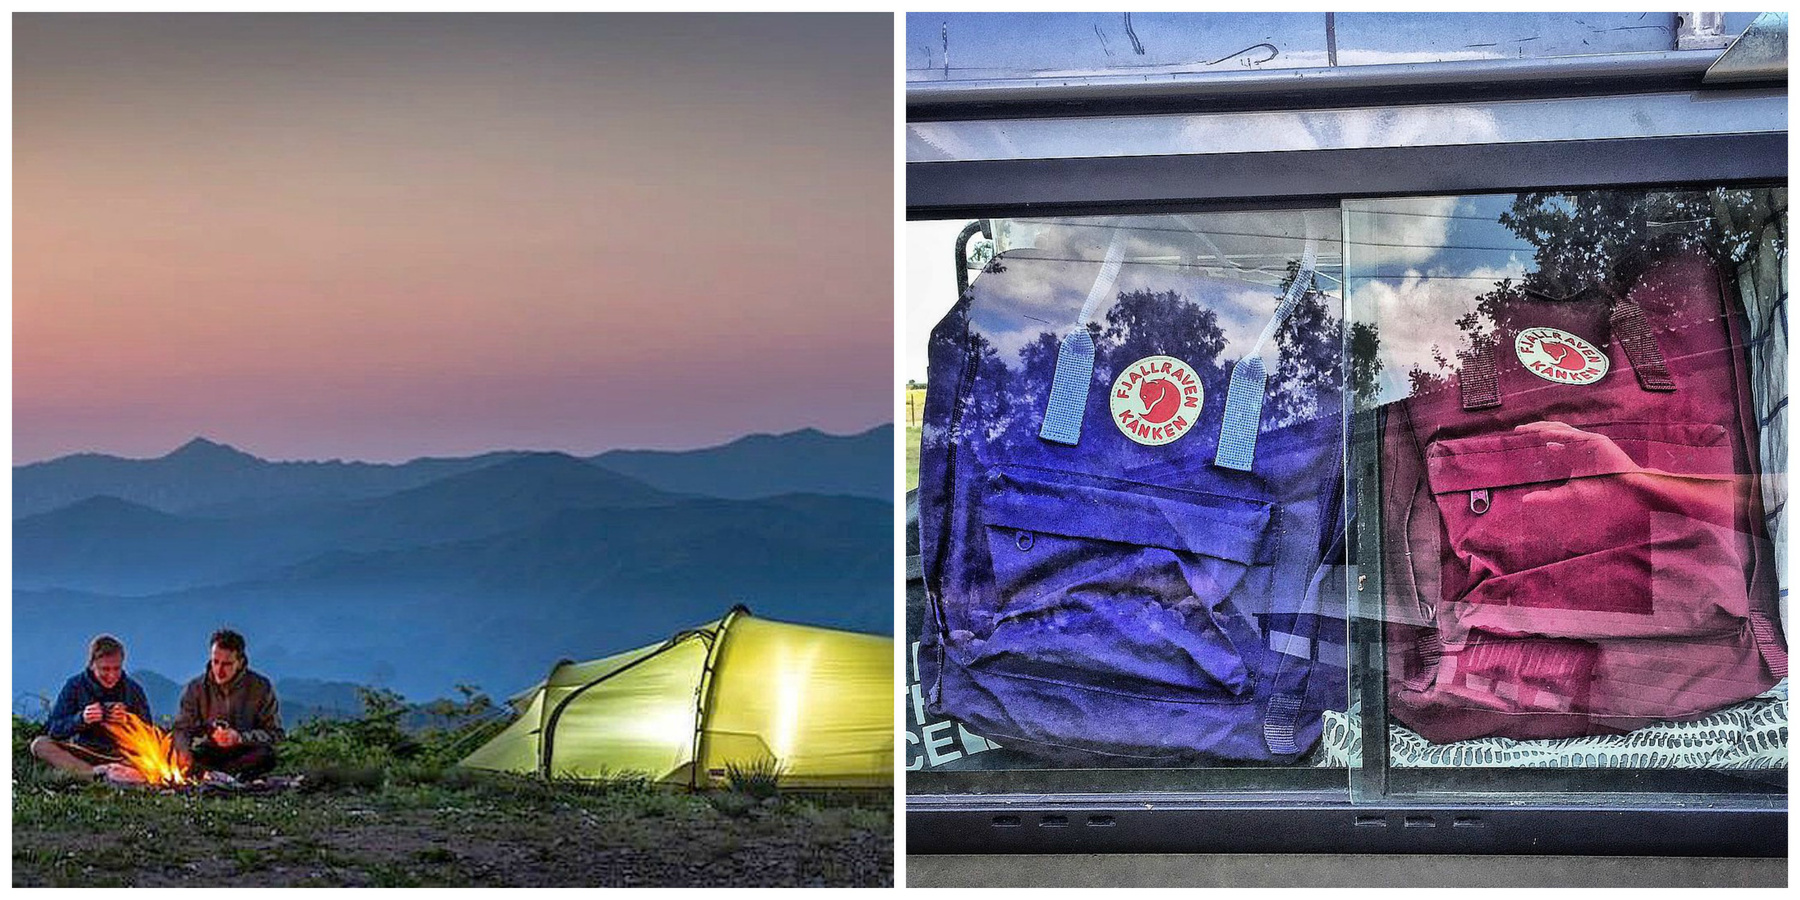 A márka egész kis csodavilágot épített fel túrázóknak az Instagramján.